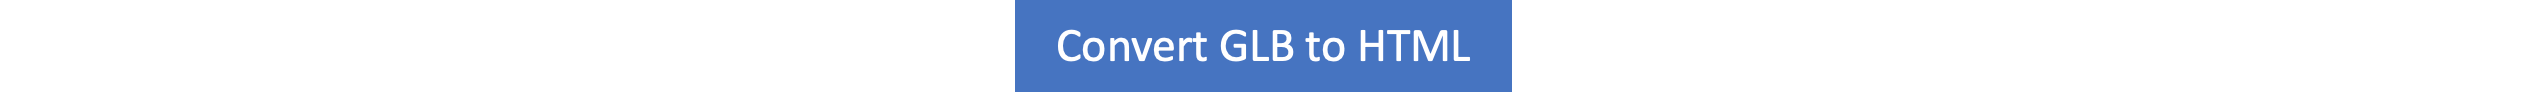 GLB do HTML